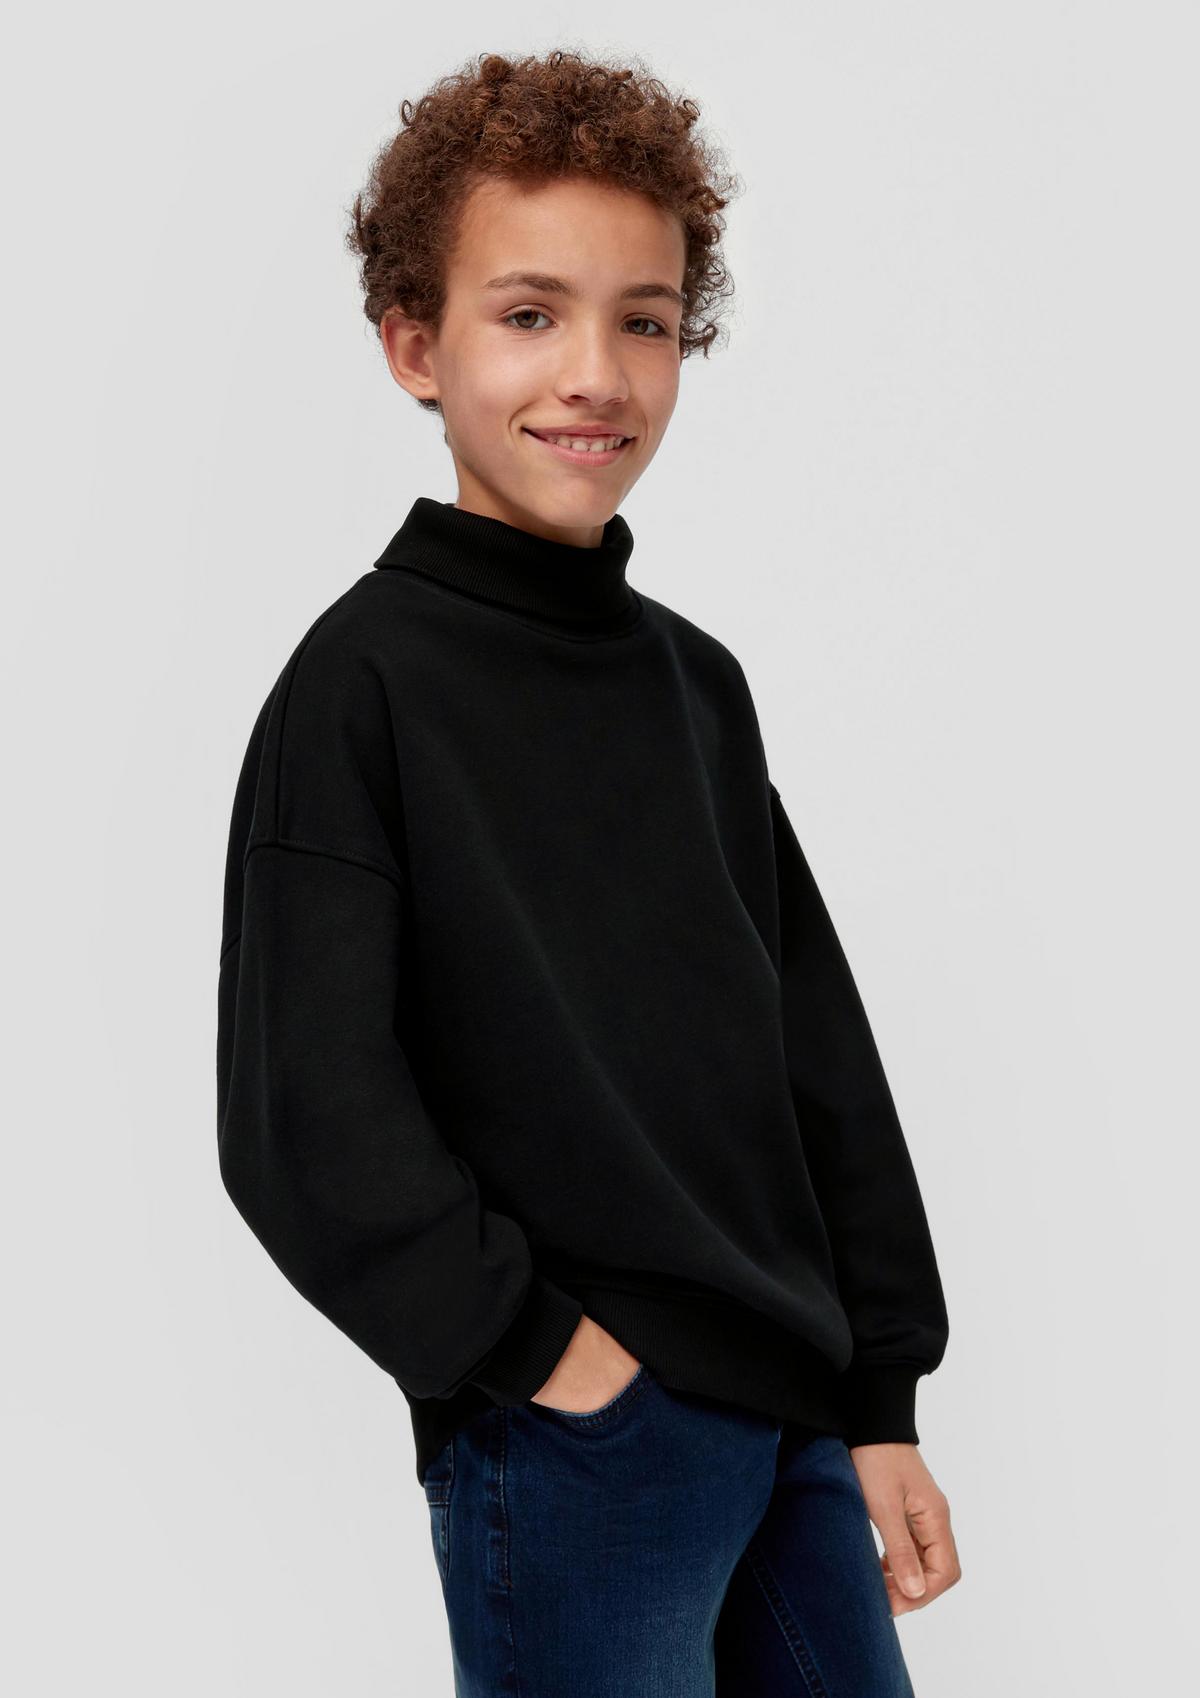 Pullover für Jungen im Sale kaufen bei : günstig Jetzt